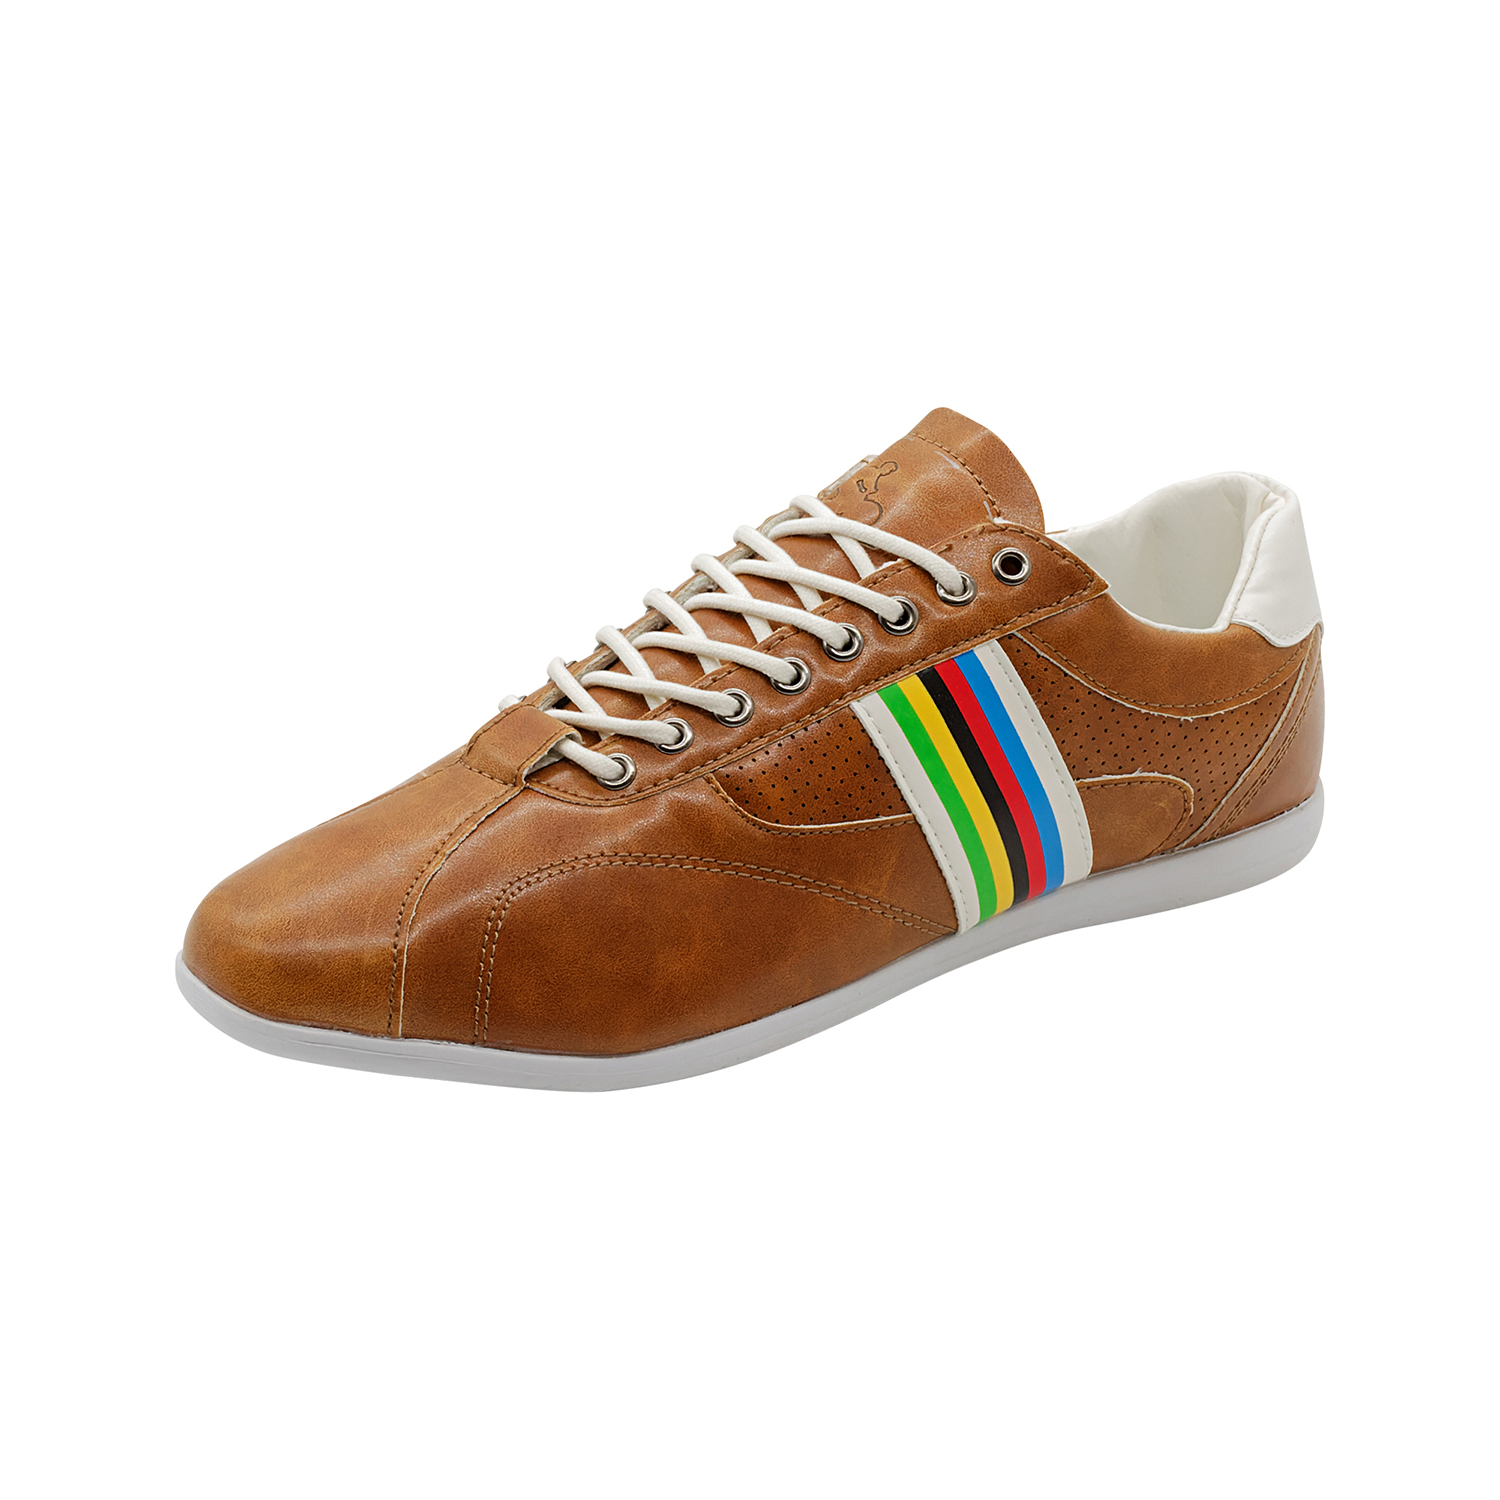 Freizeit-Schuh Vintage Gr. 46 in Braun/Weiß/Multicolor